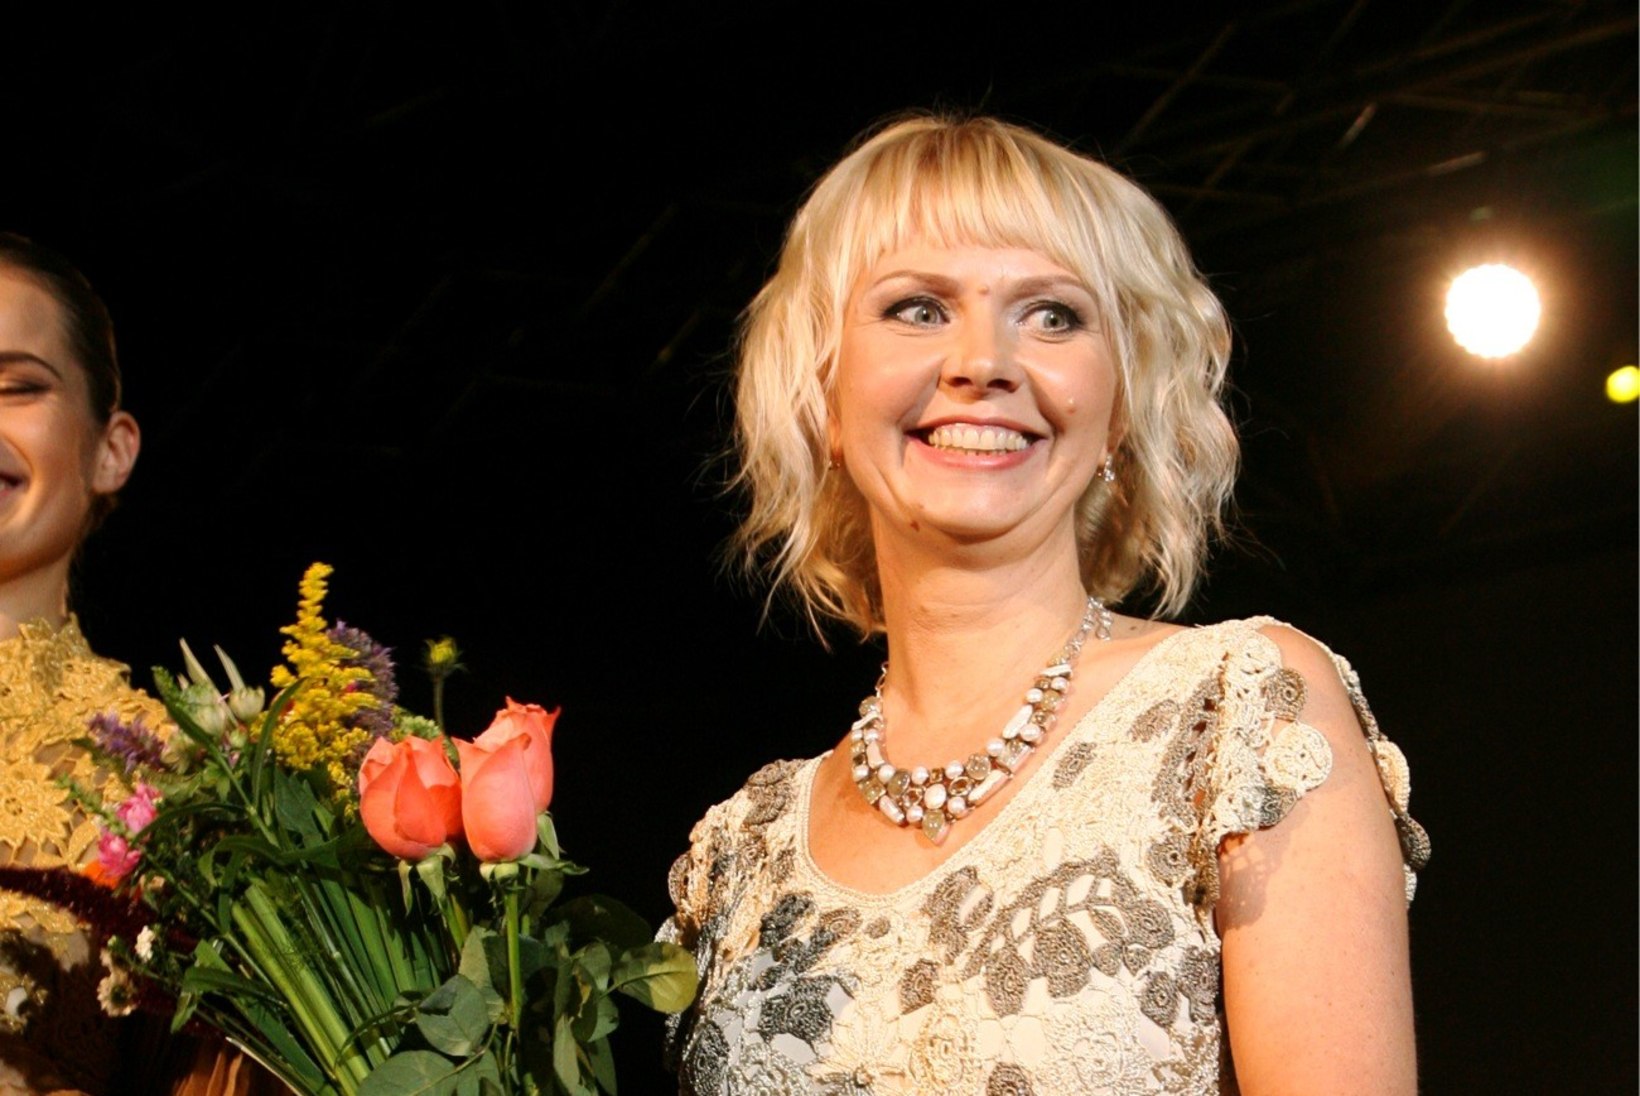 TFW | Diana Denissova moekollektsioon on saanud inspiratsiooni maagilistest sündmustest Eestis